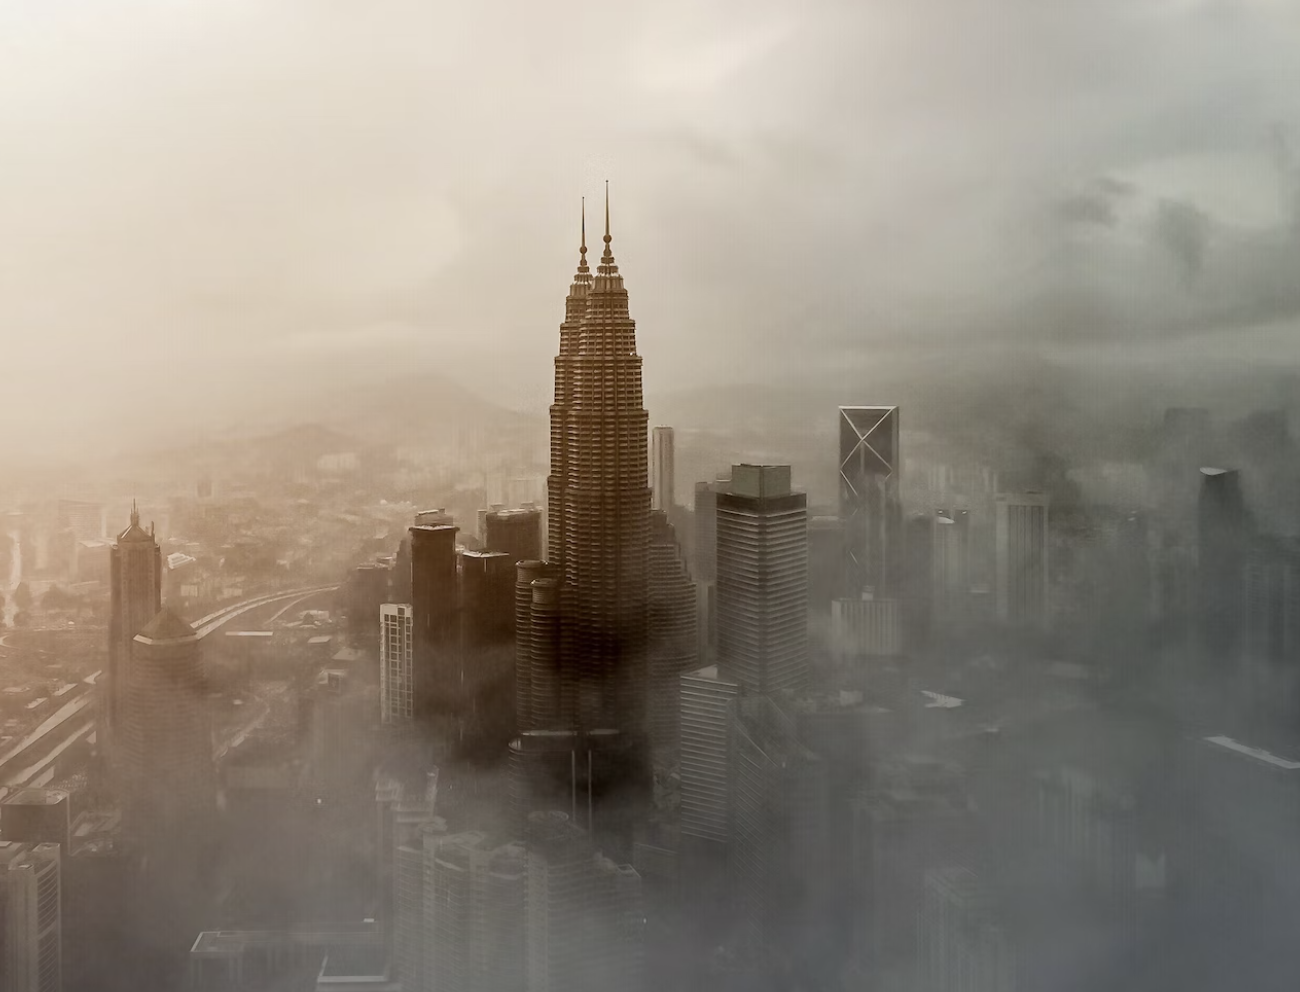 A tower in misty skies in Kuala Lumpur, Malaysia